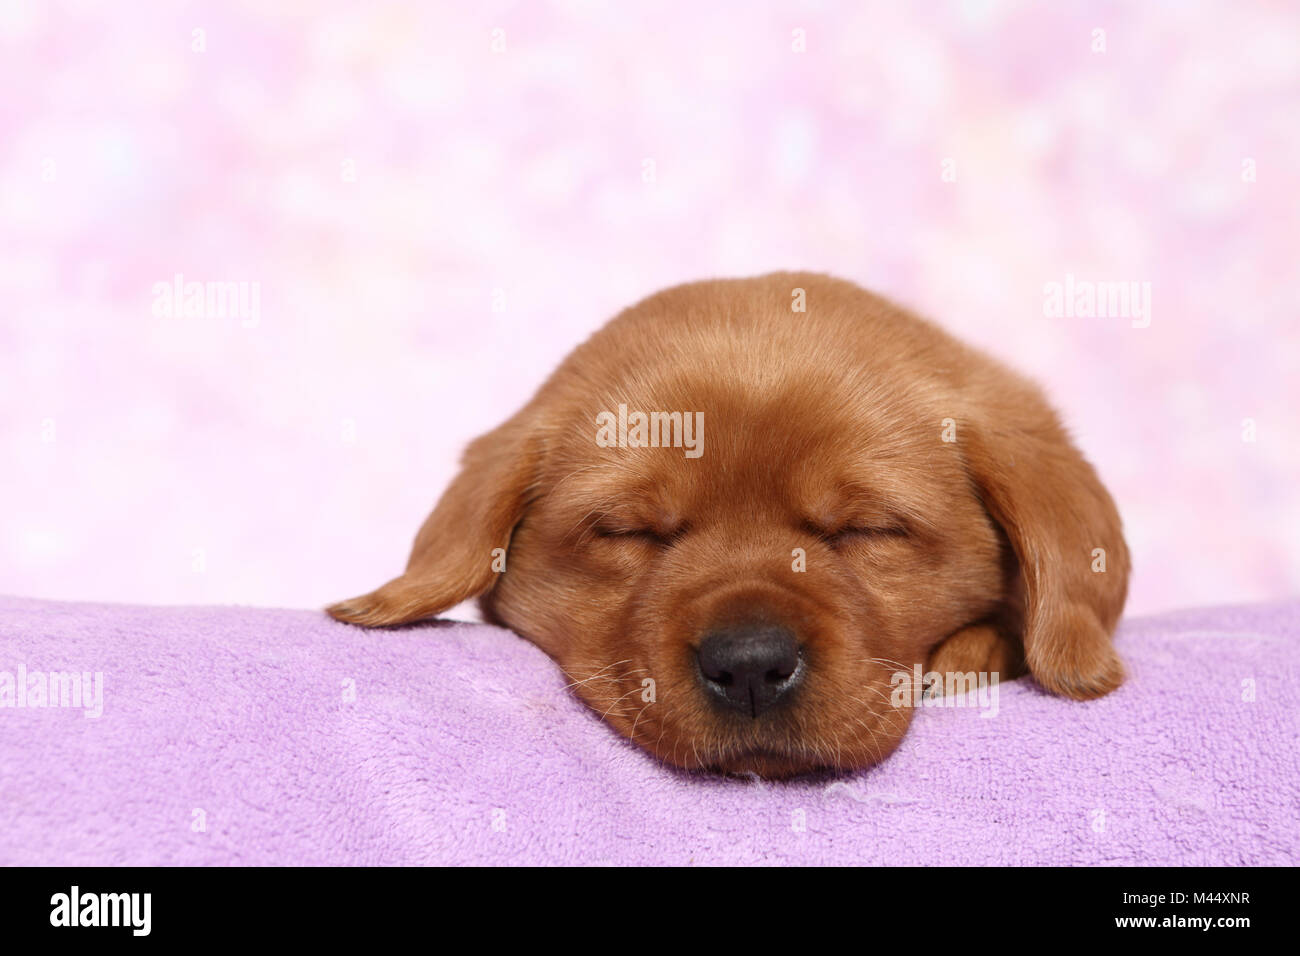 Labrador Retriever. Puppy (6 semaines) de dormir sur une couverture. Studio photo sur un fond rose. Allemagne Banque D'Images